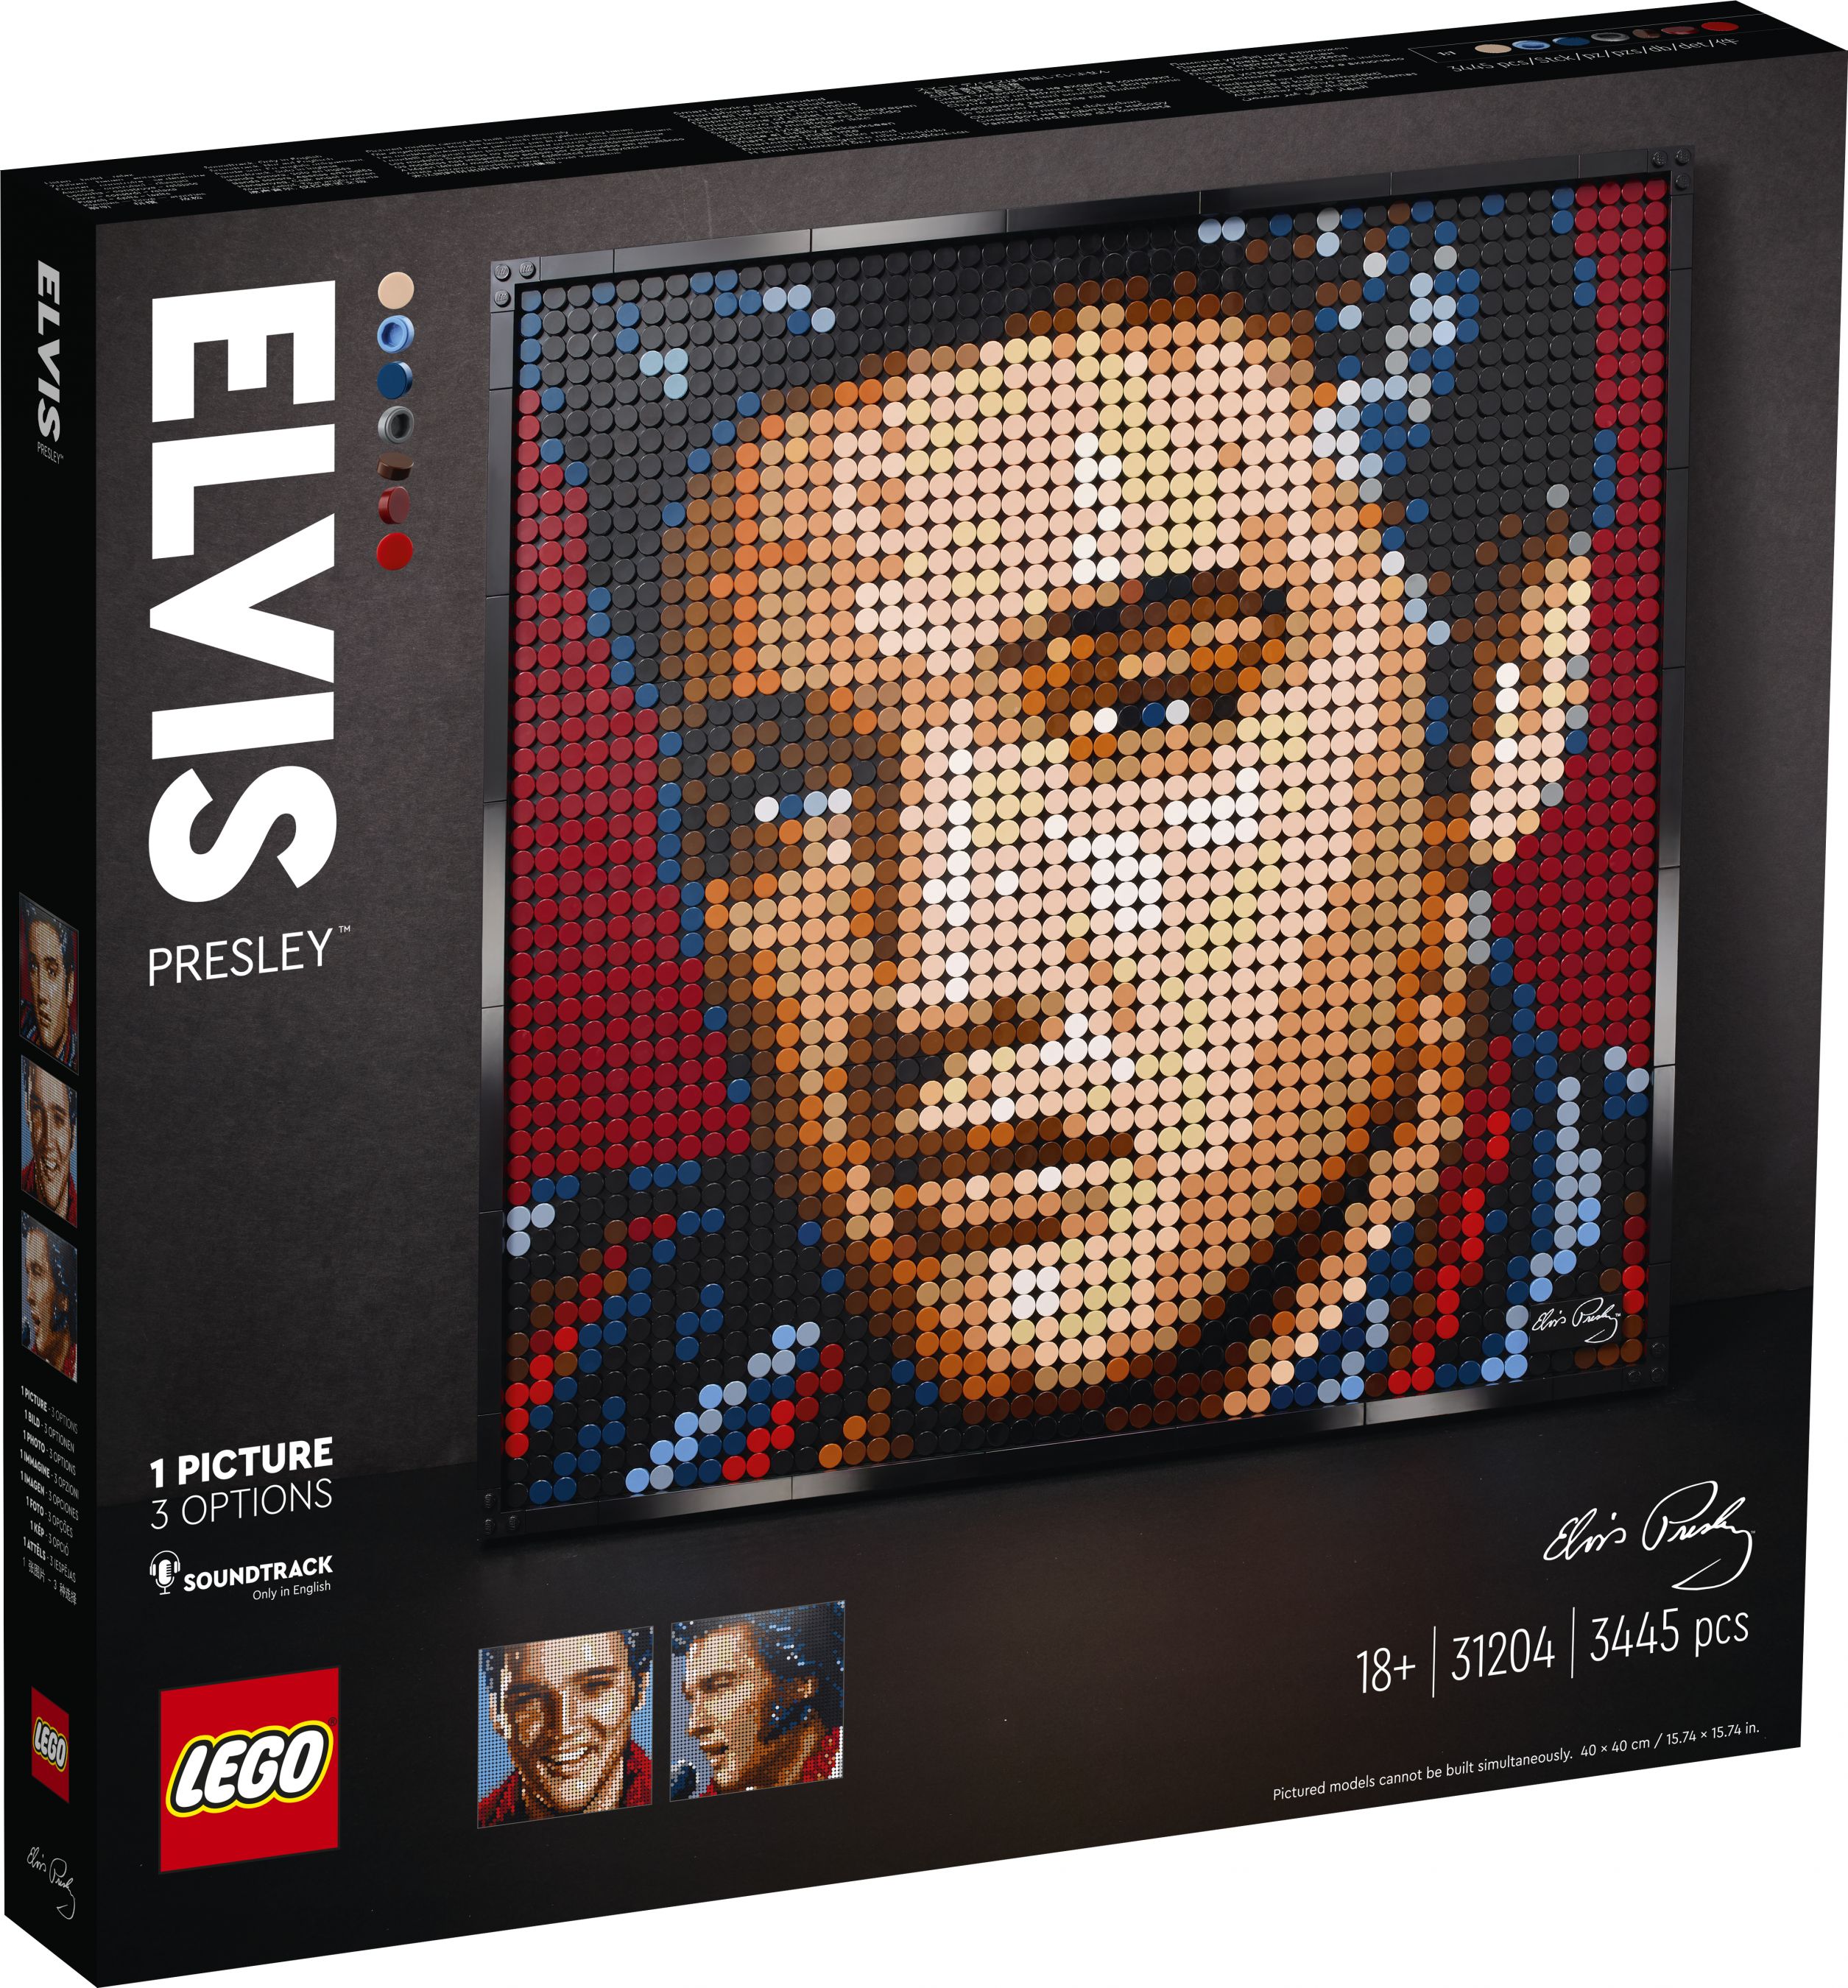 LEGO Art 31204 Elvis Presley – „The King“ LEGO_31204_Box1_v29.jpg